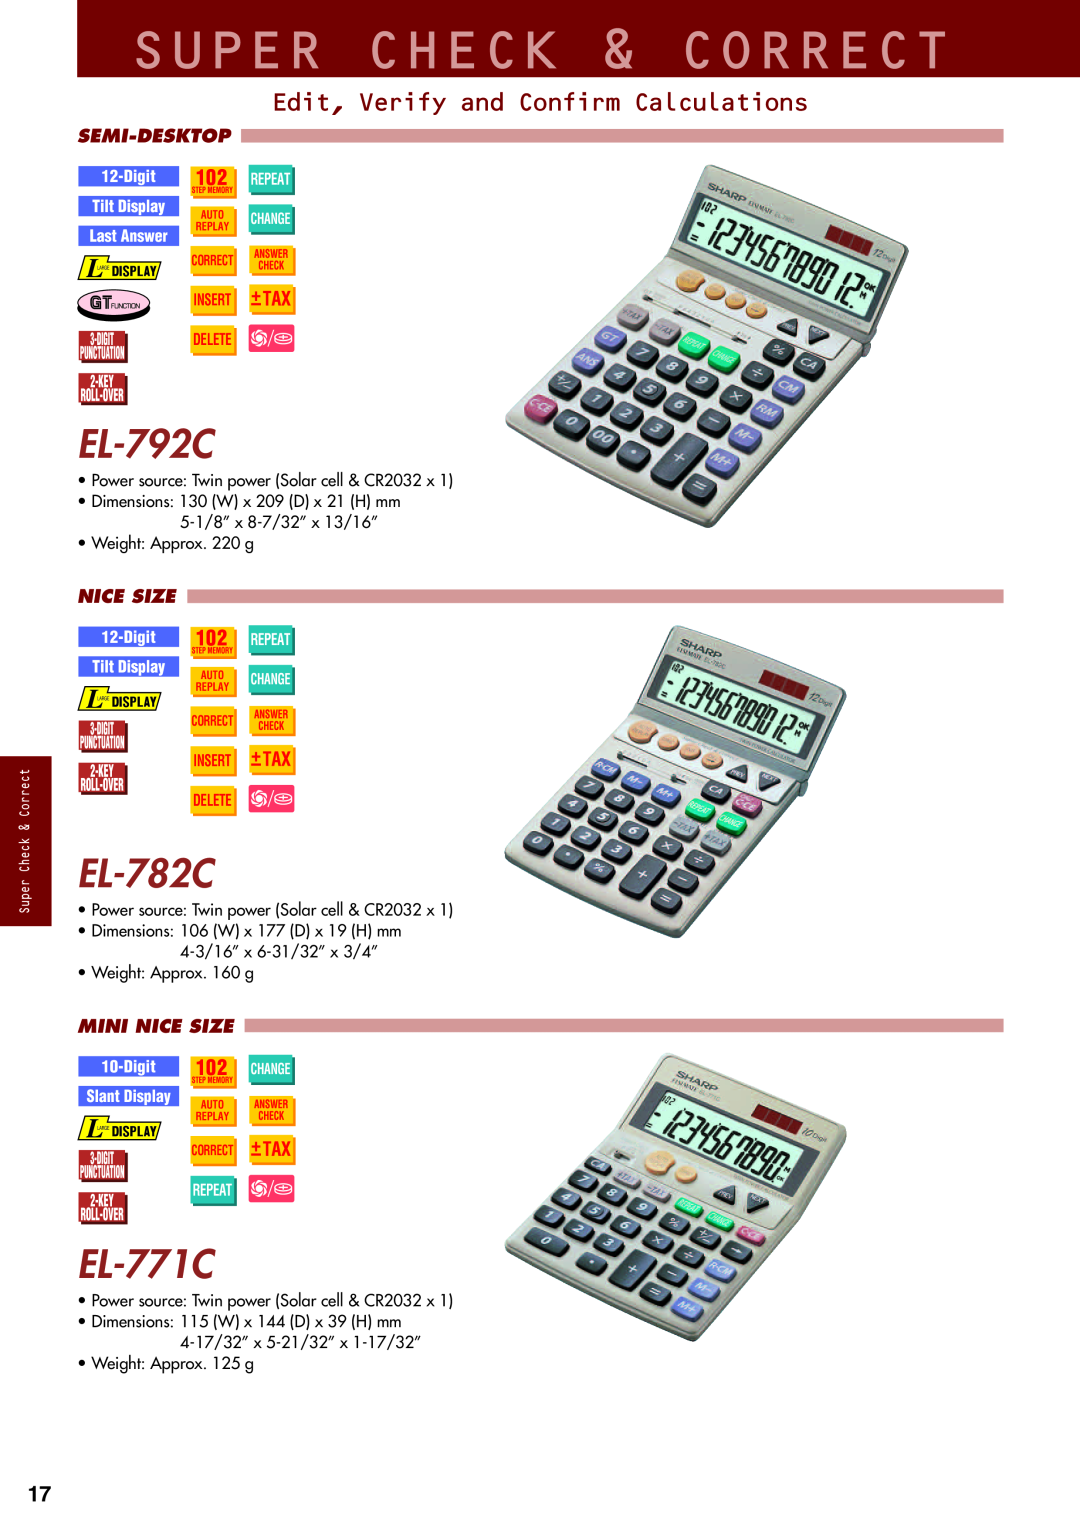 Sharp electronic calculator Super Check & Correct, EL-792C, EL-782C, EL-771C, Edit, Verify and Confirm Calculations, Digit 